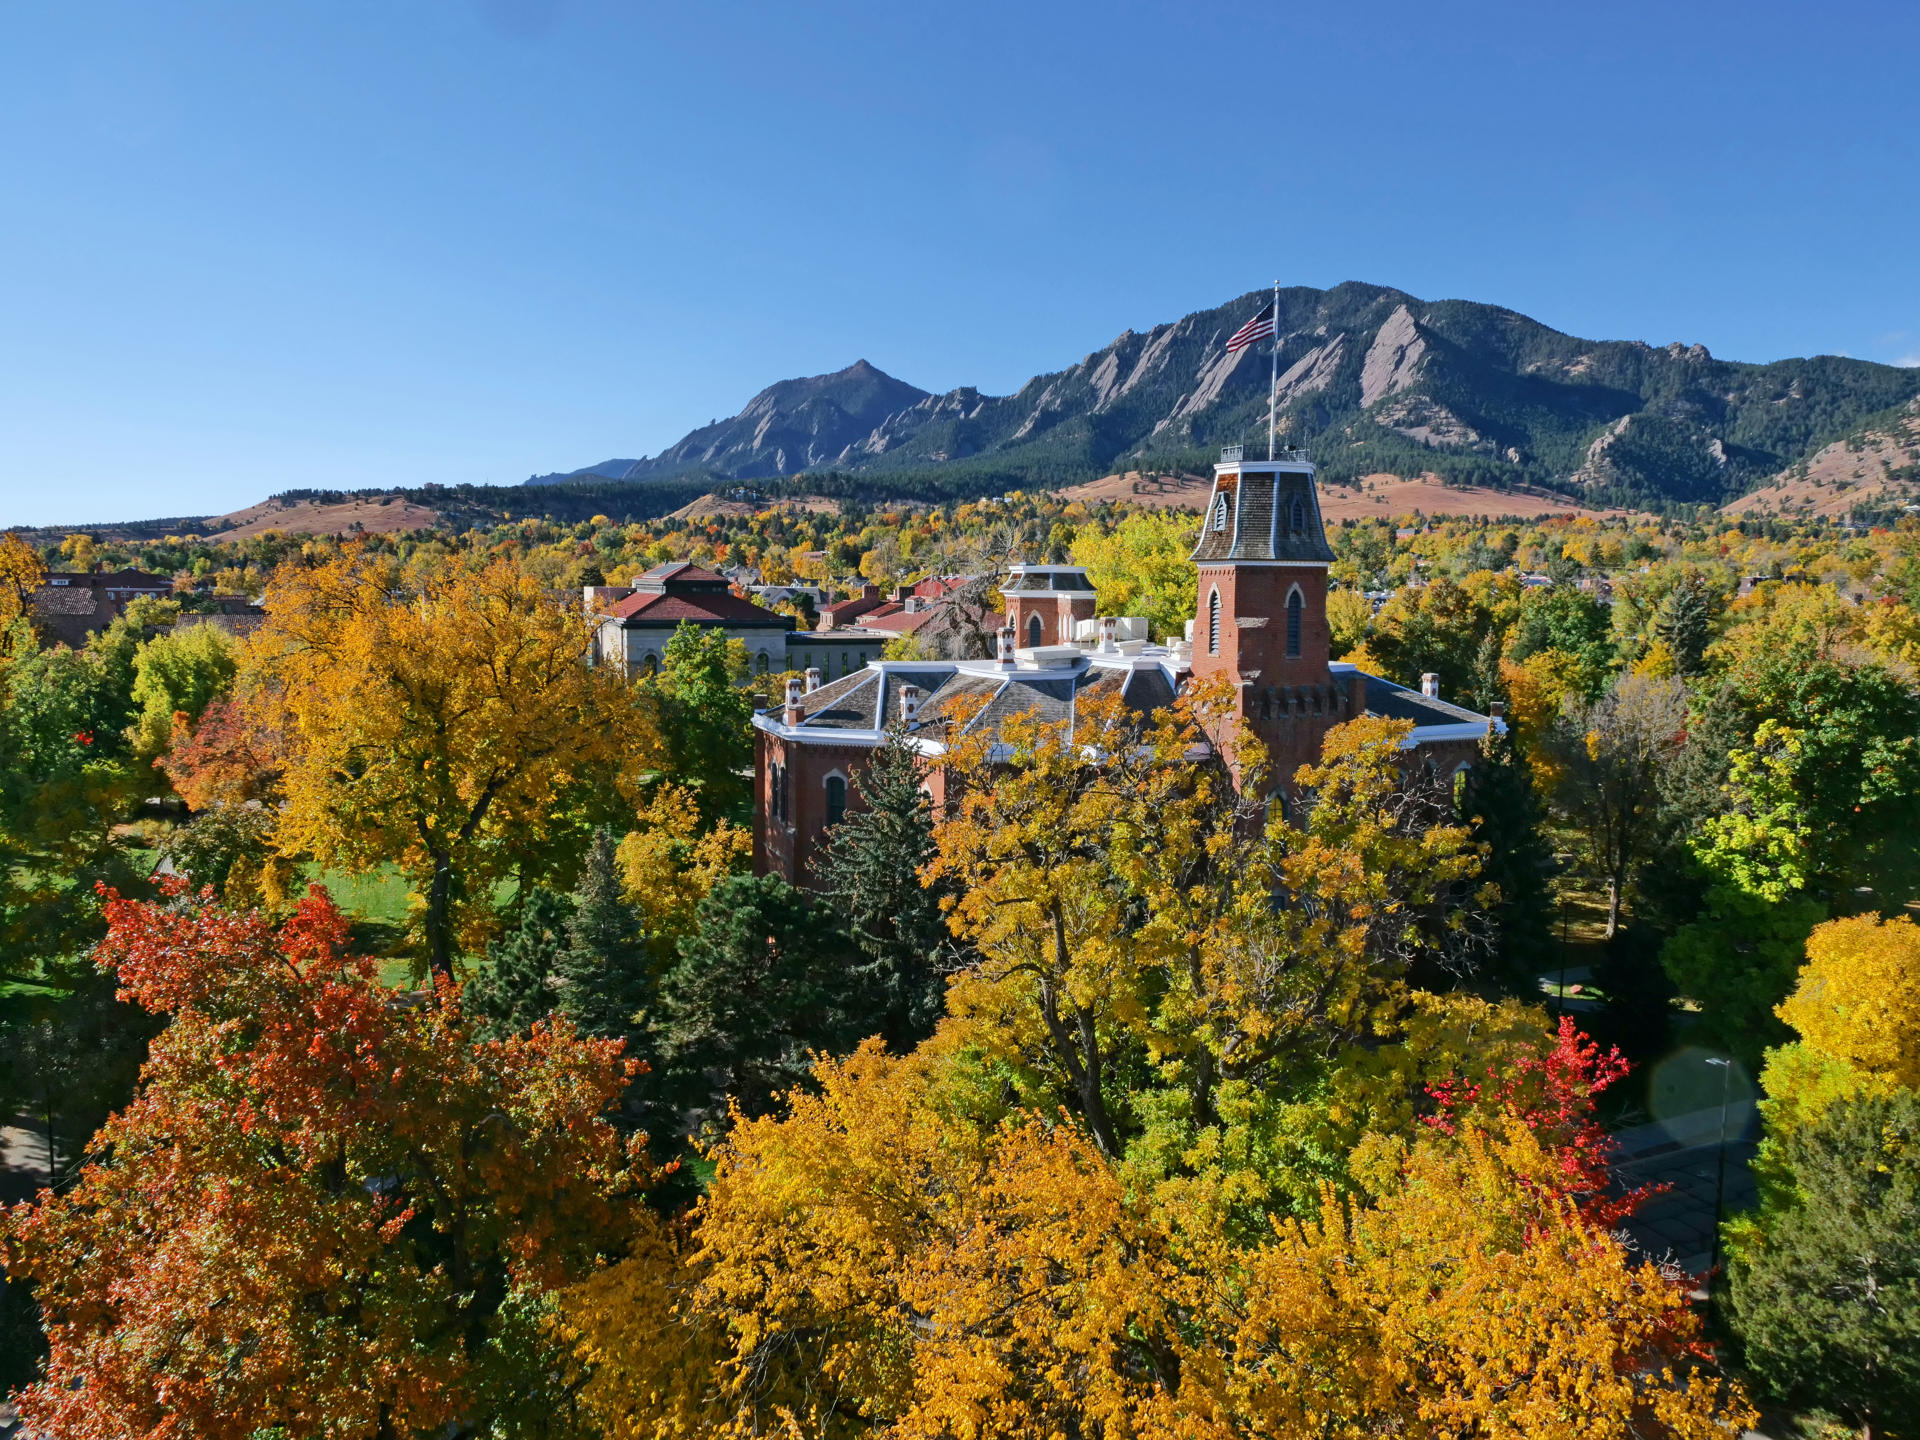 Fotografía cedida por la Universidad de Colorado donde se aprecian los colores de otoño en el campus de la universidad en el centro de la ciudad de Boulder en Colorado. EFE/Casey A. Cass/Universidad de Colorado /SOLO USO EDITORIAL/NO VENTAS/SOLO DISPONIBLE PARA ILUSTRAR LA NOTICIA QUE ACOMPAÑA/CRÉDITO OBLIGATORIO
